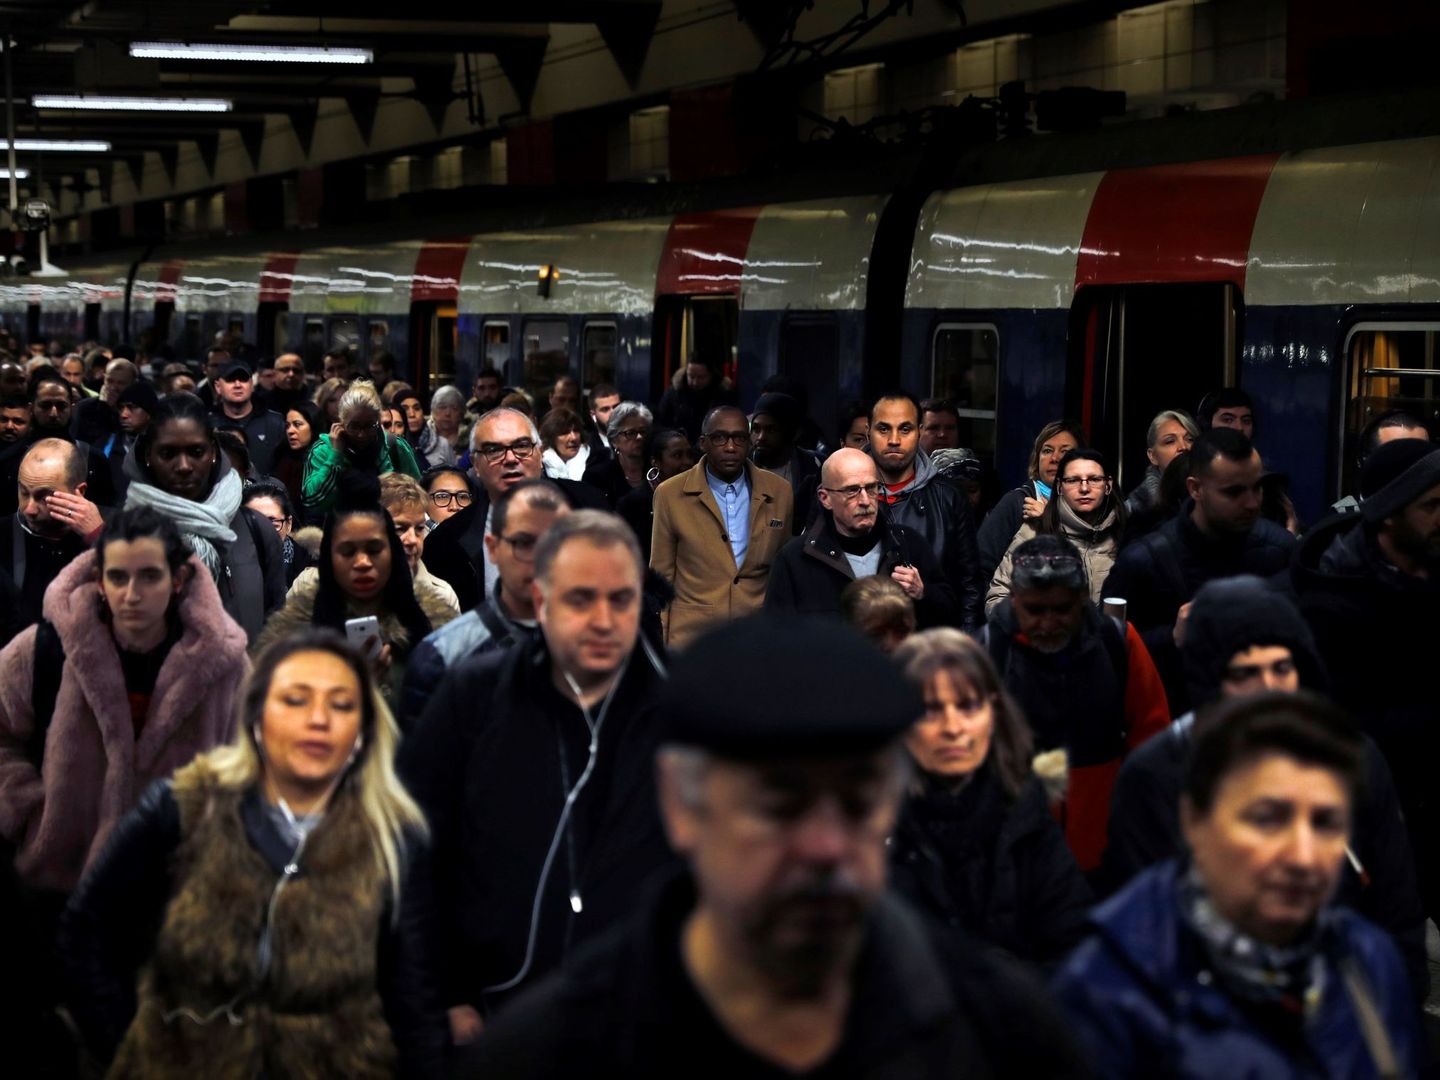 Viajeros bajan de un tren regional en la estación Gare du Nord en París durante la primera jornada de huelga ferroviaria, el 3 de abril de 2018. (EFE)